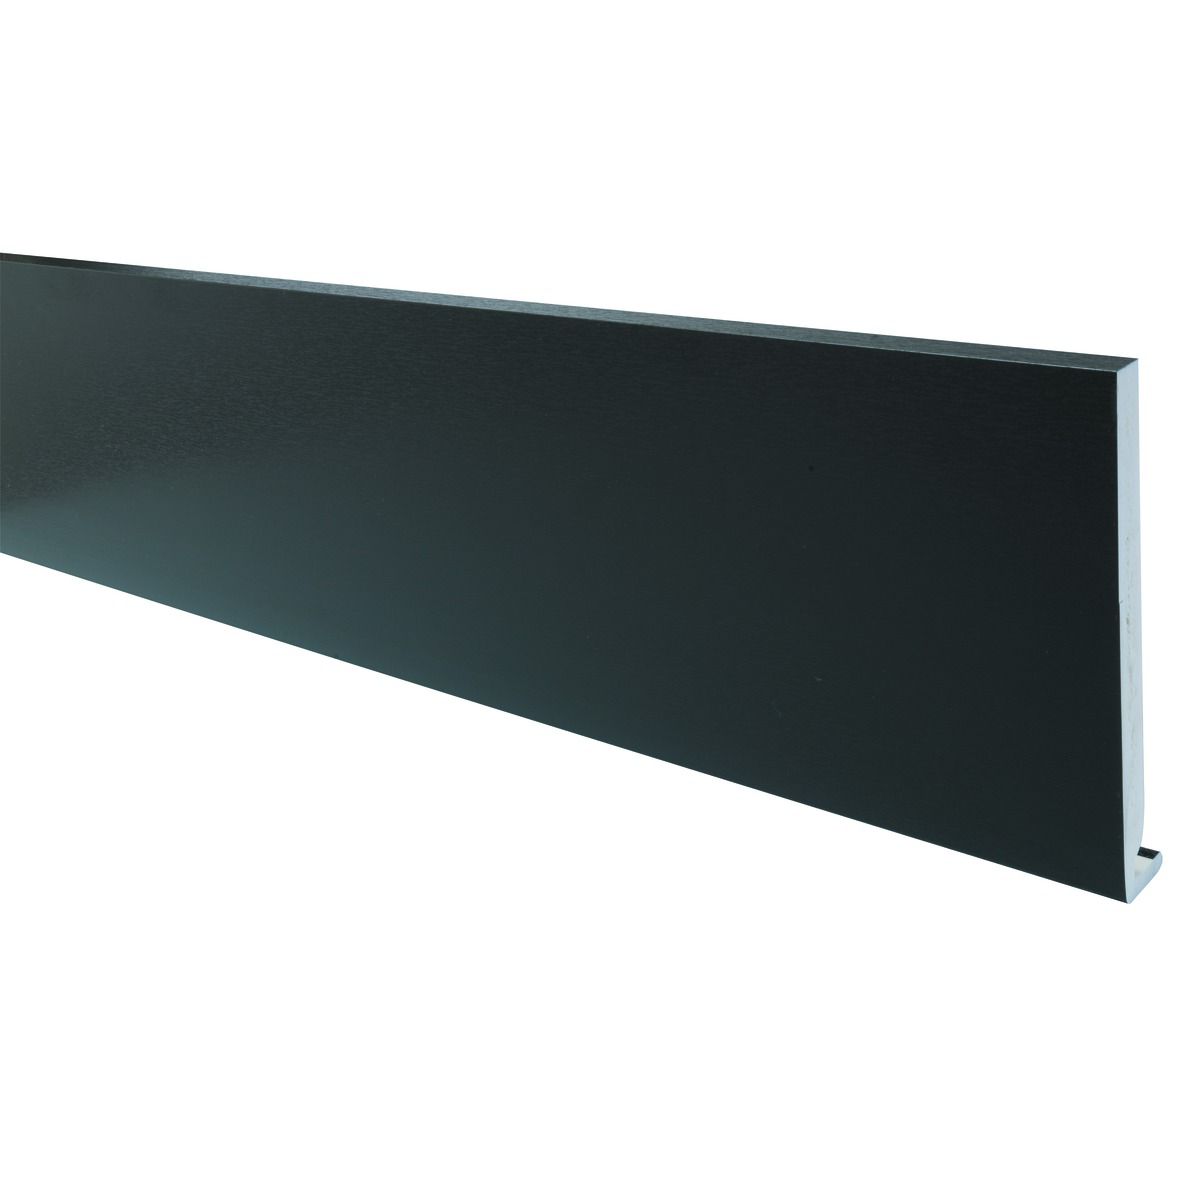 Image of Wickes PVCu Black Fascia Board 18 x 175 x 2500mm